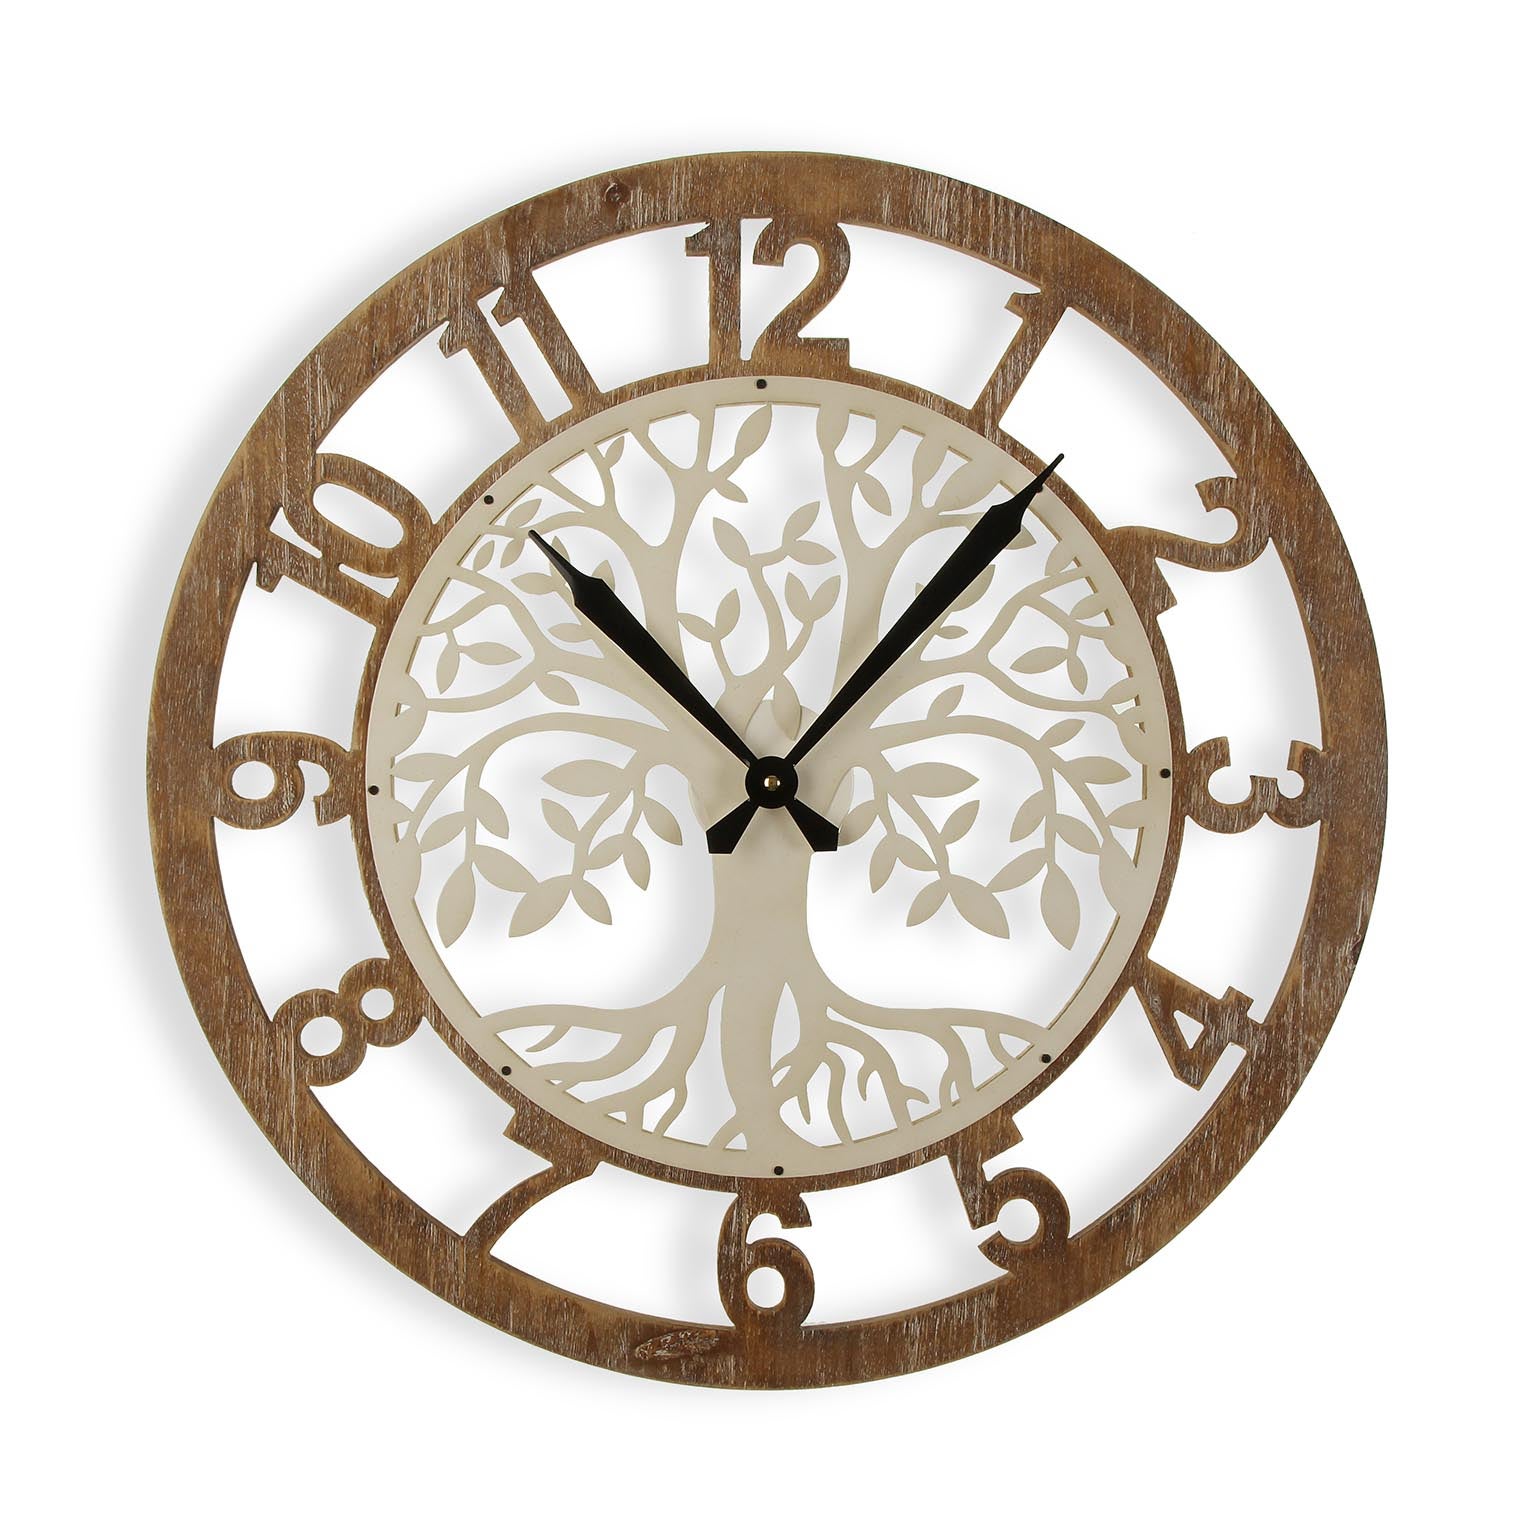 Versa auxon reloj de pared decorativo para la cocina, el salón, el comedor o la habitación, blanco y marrón, 60x4,5x60cm